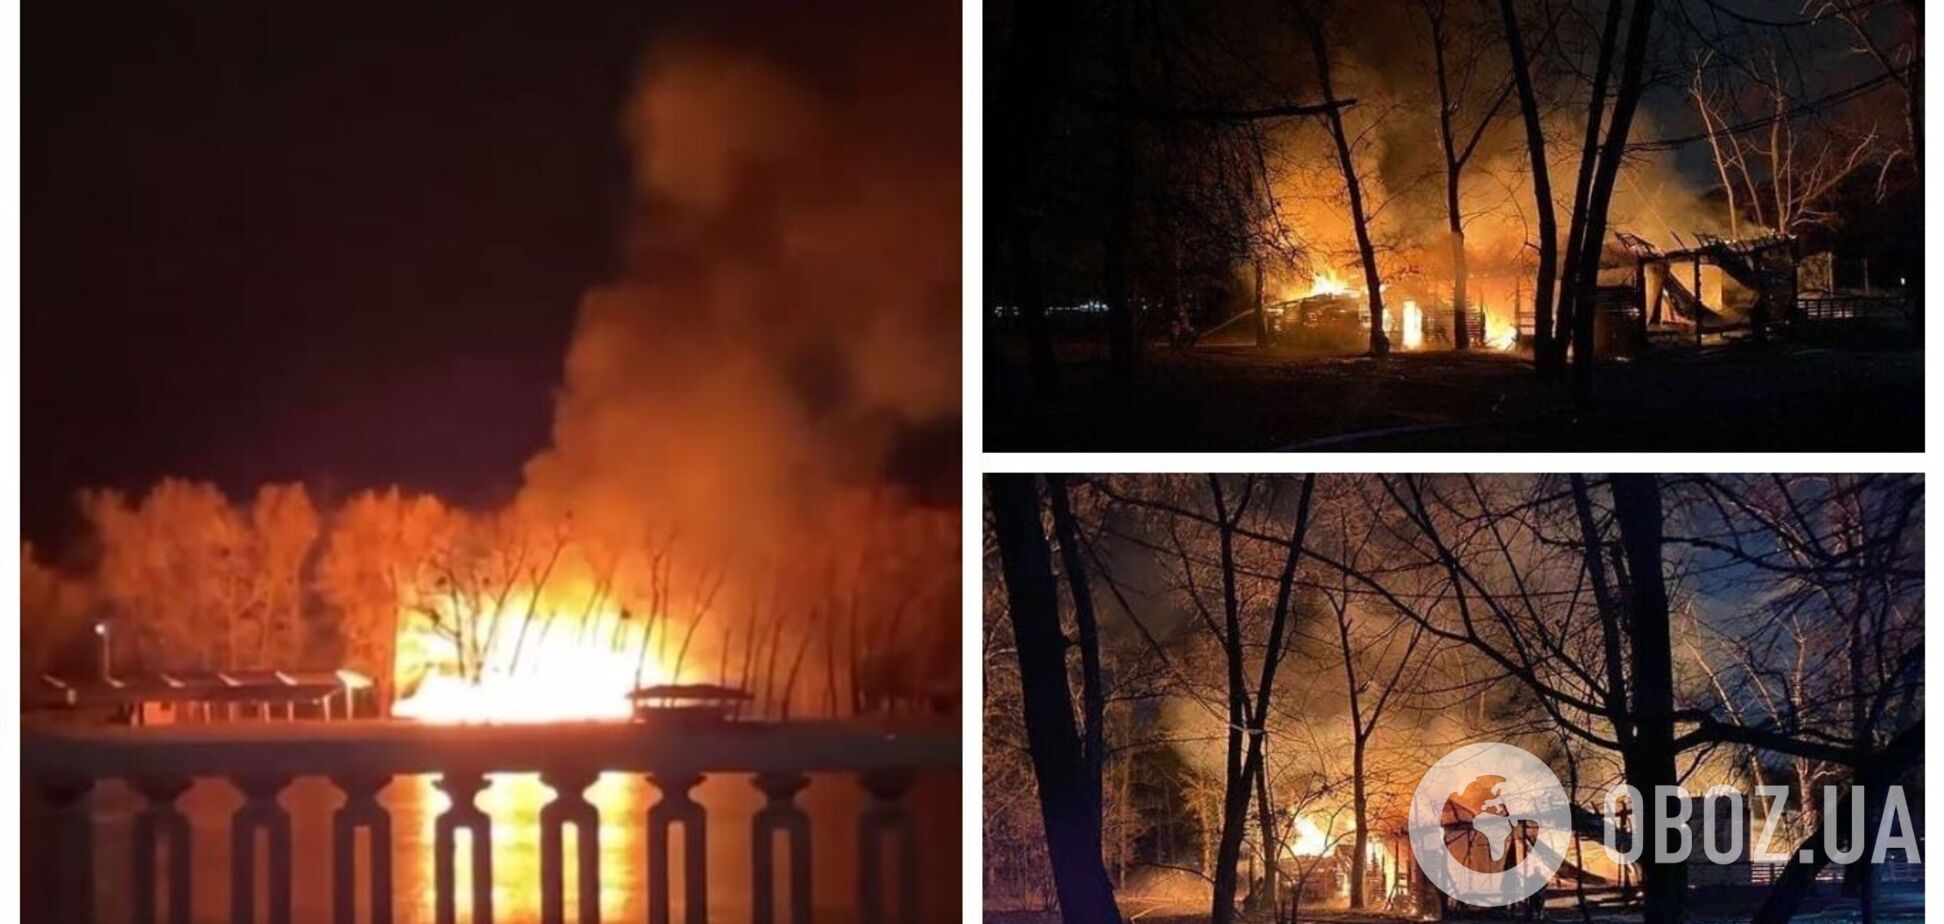 На Трухановом острове в Киеве произошел масштабный пожар: пламя было видно издалека. Фото и видео